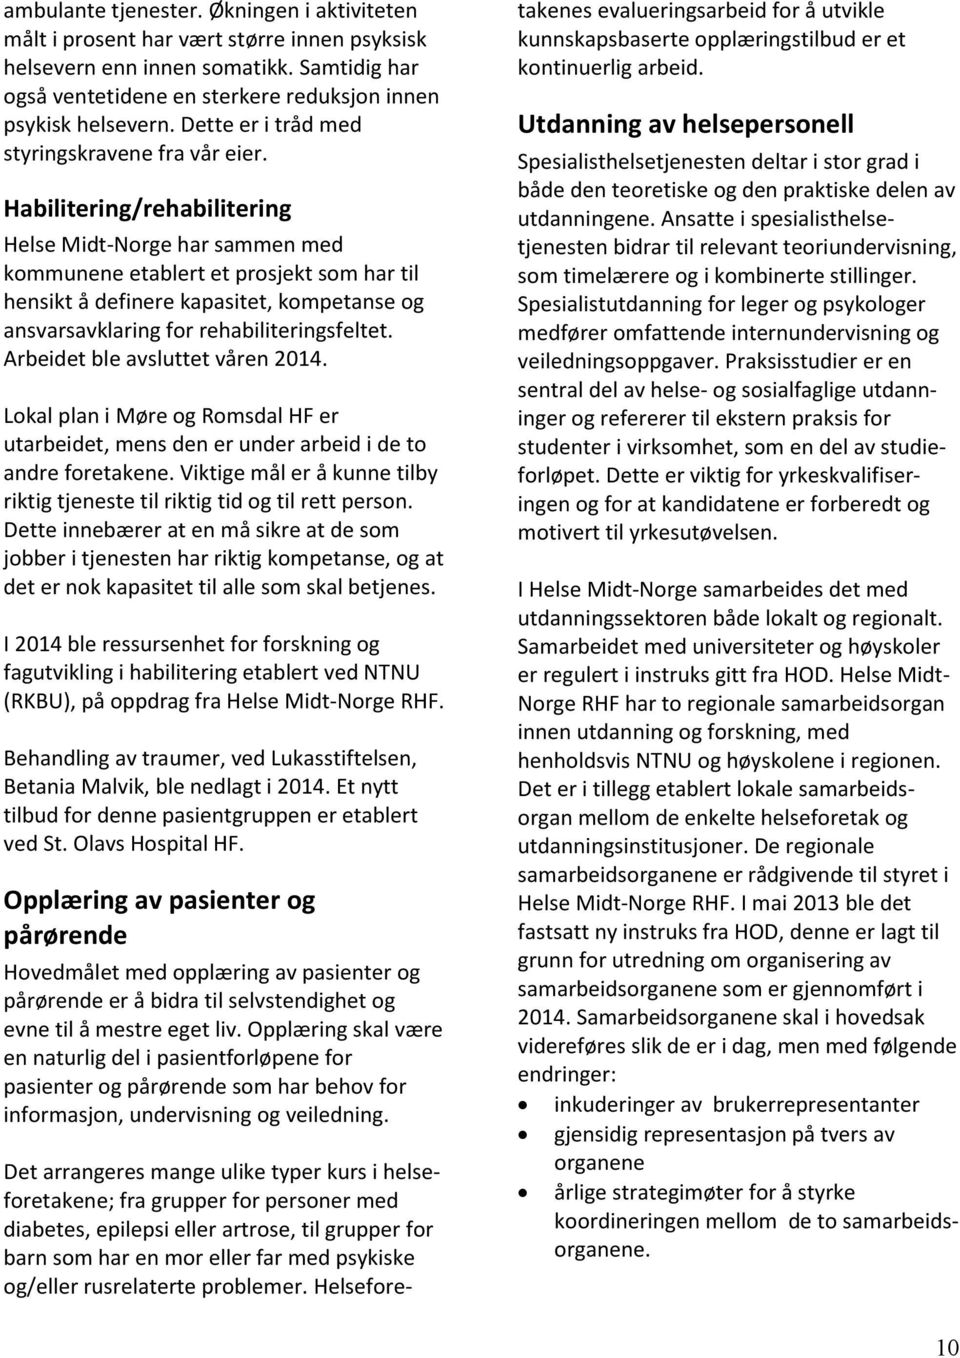 Habilitering/rehabilitering Helse Midt-Norge har sammen med kommunene etablert et prosjekt som har til hensikt å definere kapasitet, kompetanse og ansvarsavklaring for rehabiliteringsfeltet.